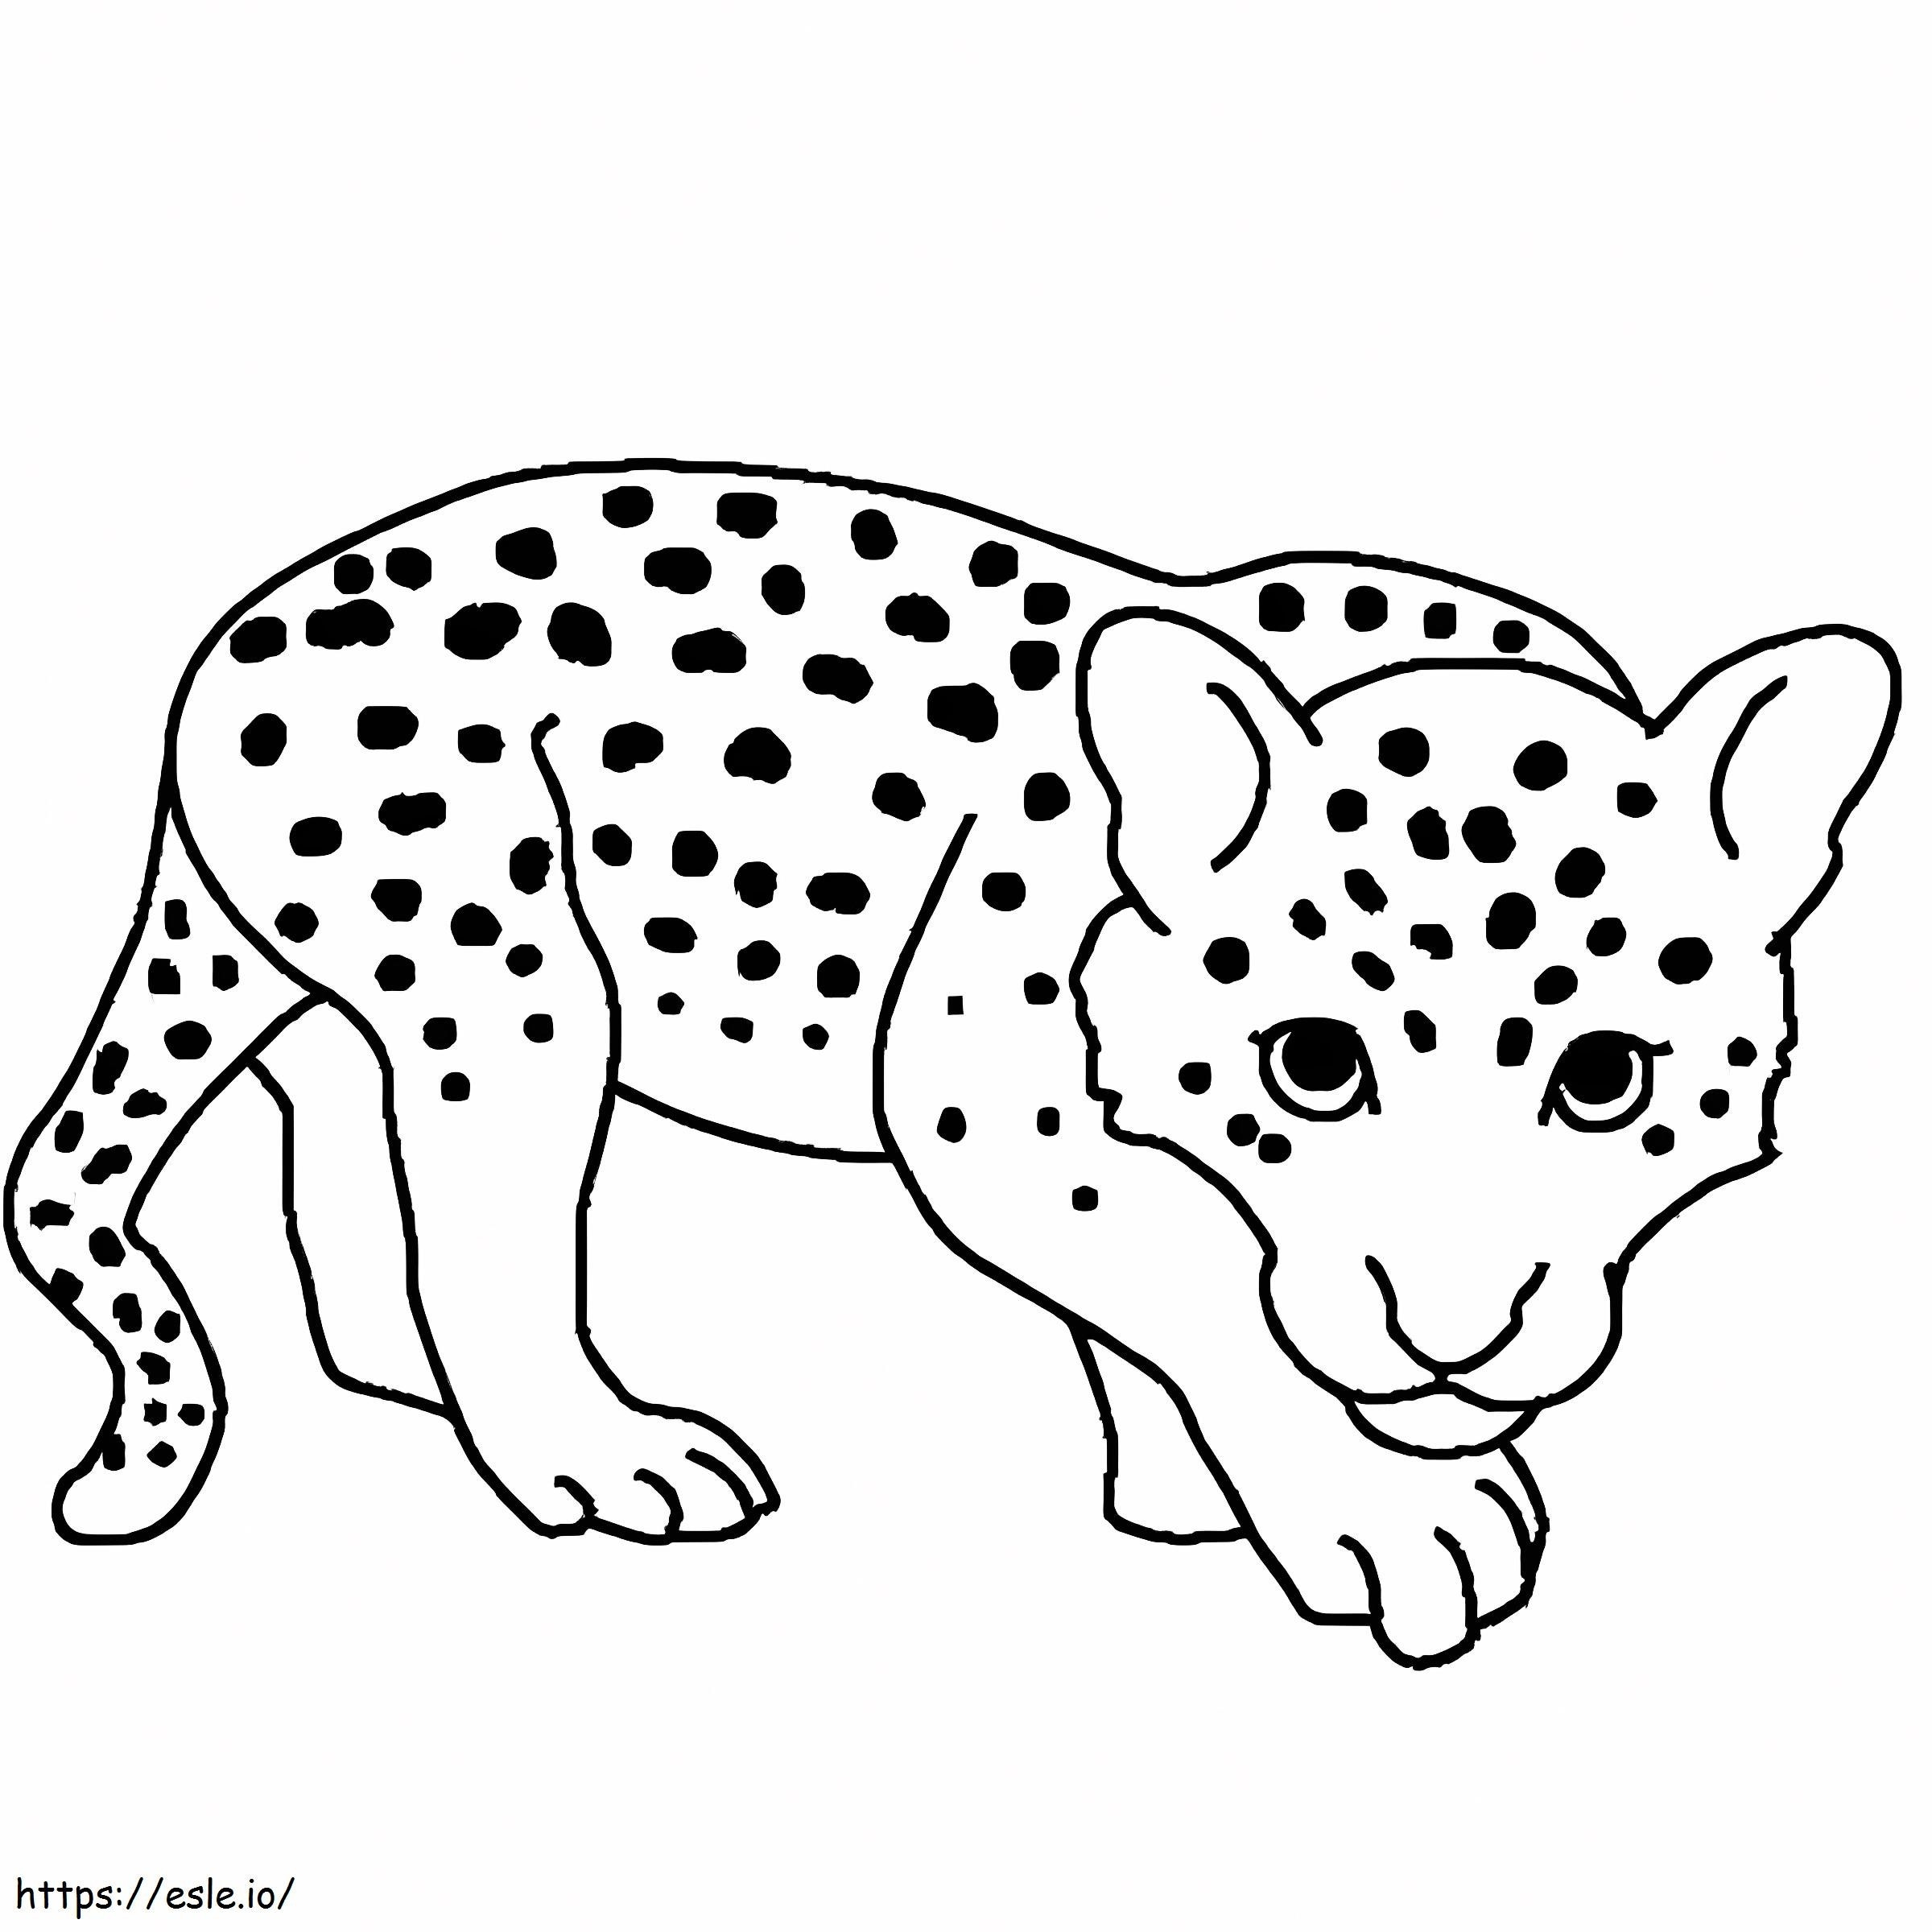 Marele Leopard de colorat